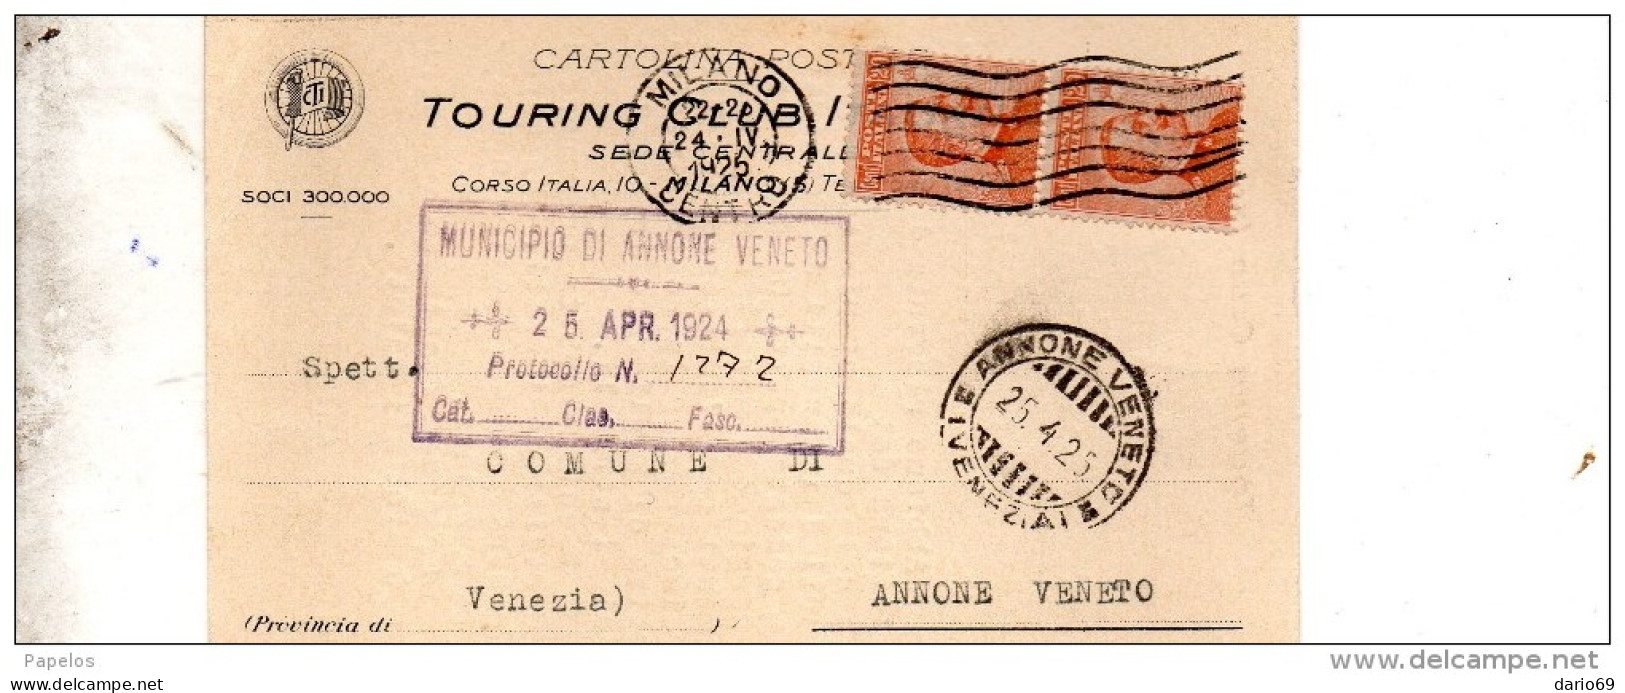 1925 CARTOLINA INTESTATA TOURING CLUB CON ANNULLO MILANO + ANNONE VENETO VENEZIA - Marcophilie